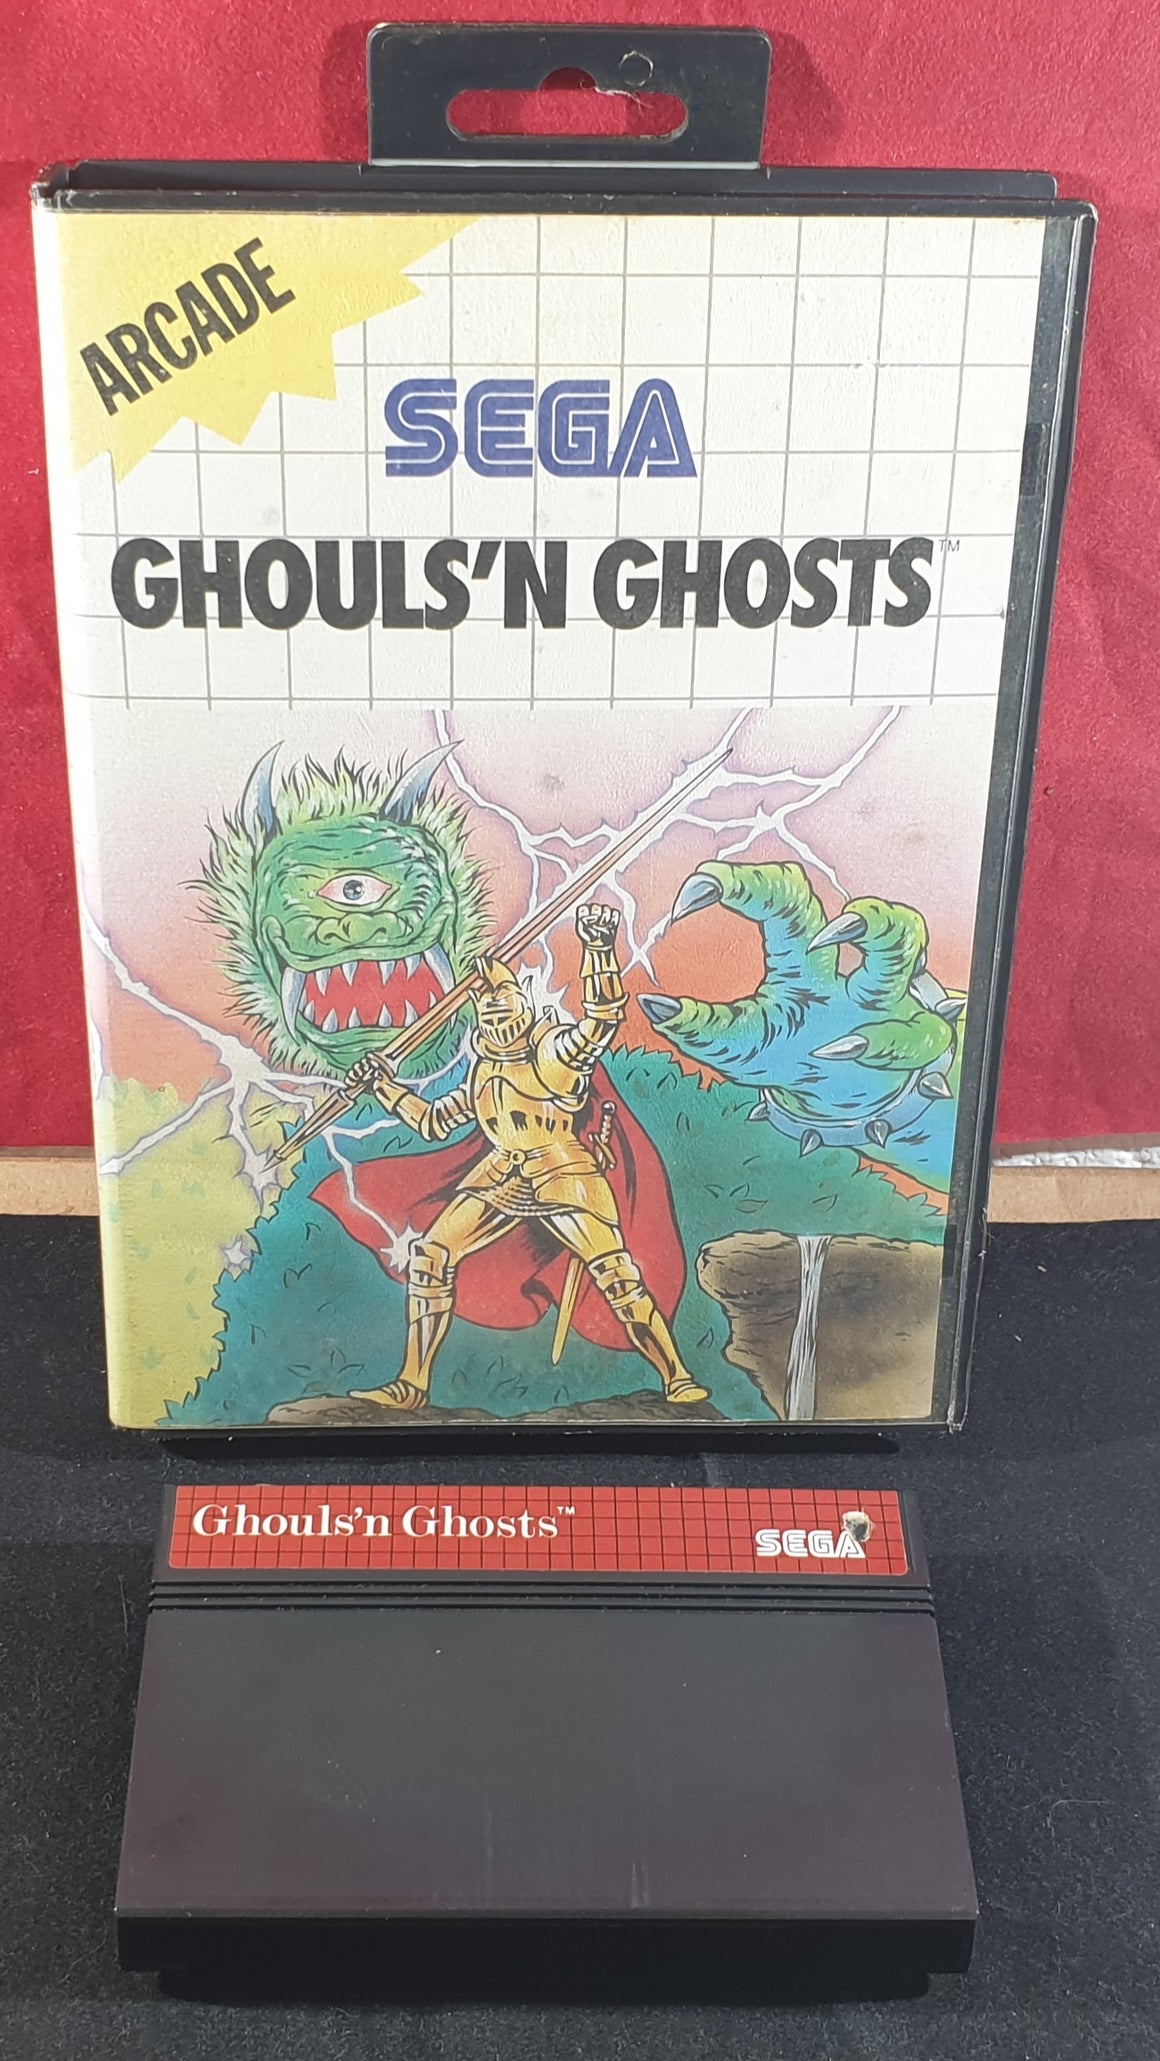 Master of Ghouls by Jordan L. Hawk